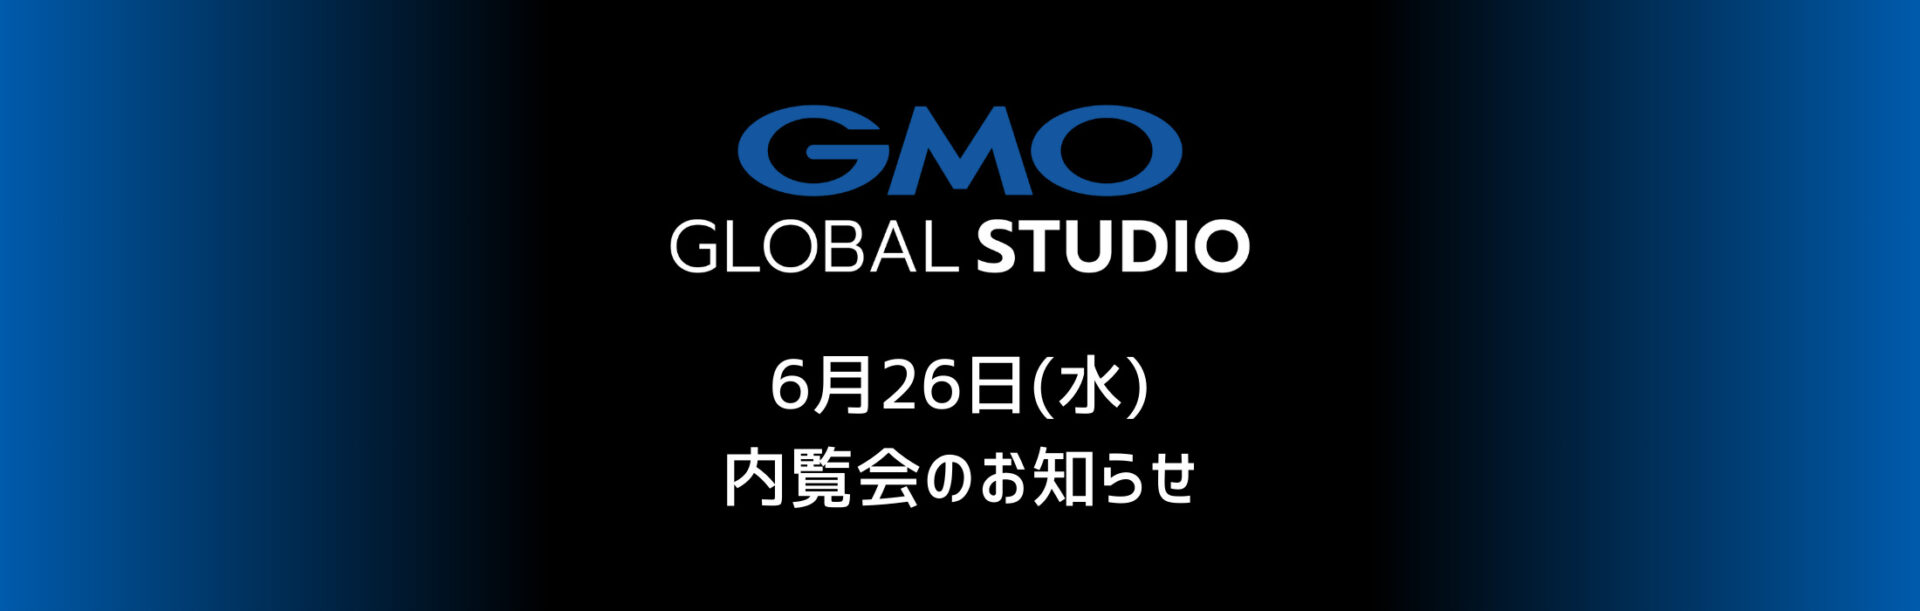 GMOグローバルスタジオ 内覧会 6月26日(水)